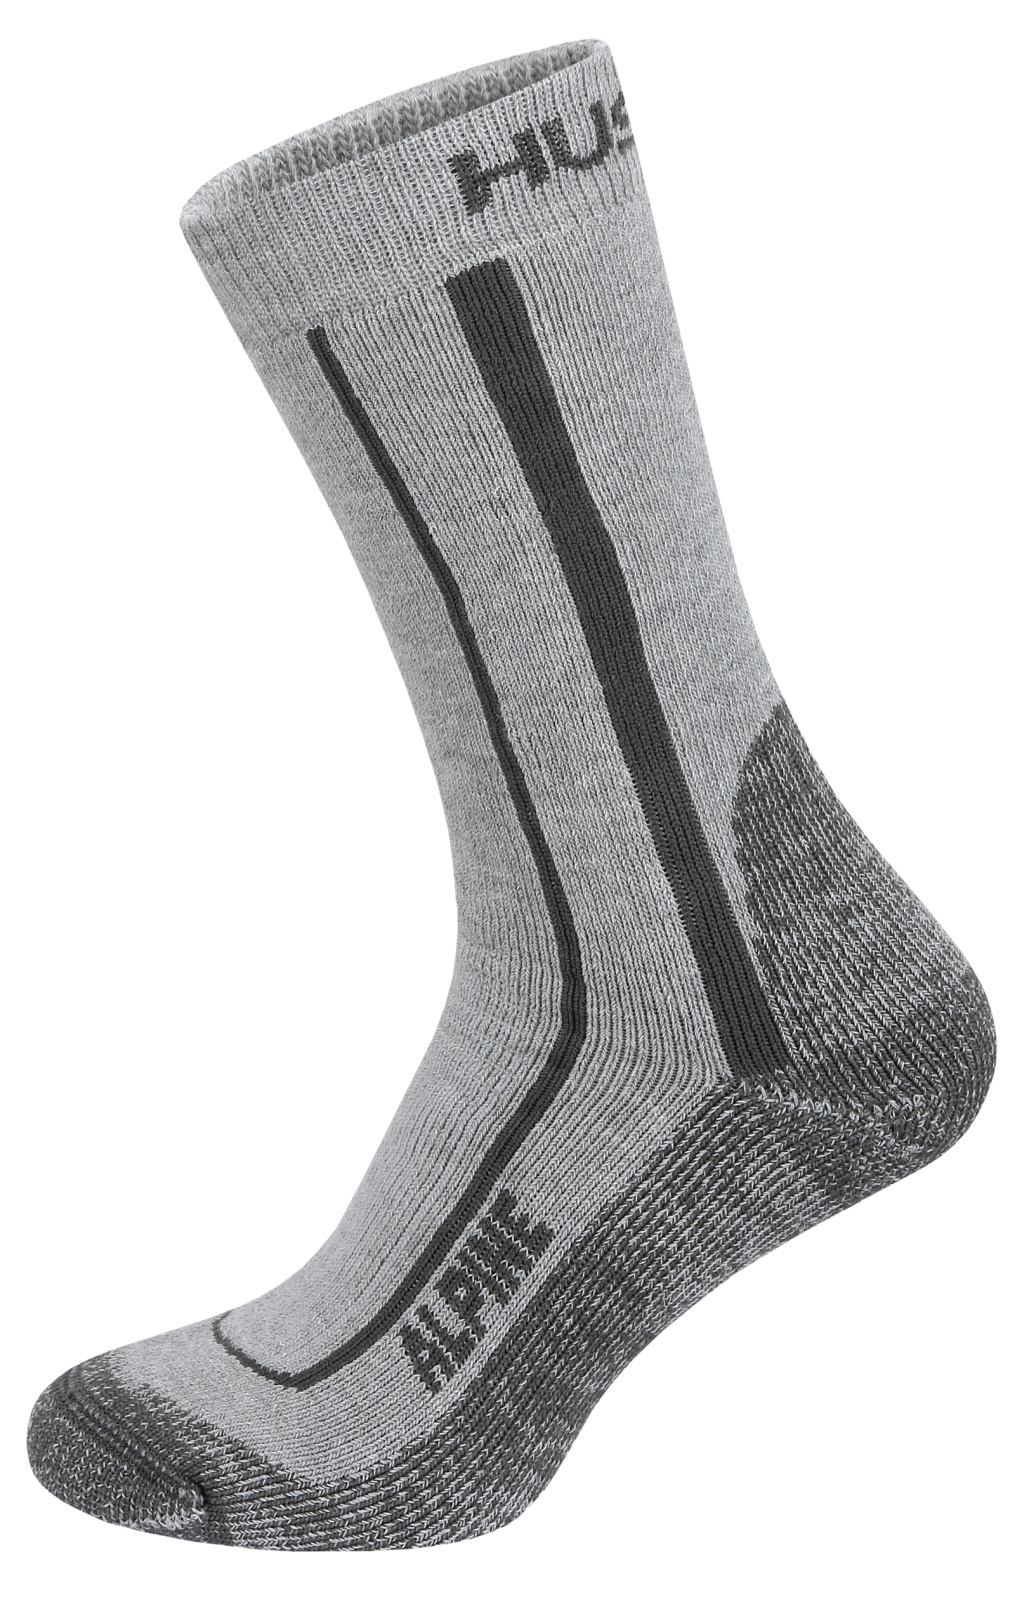 HUSKY Alpine Socks grey